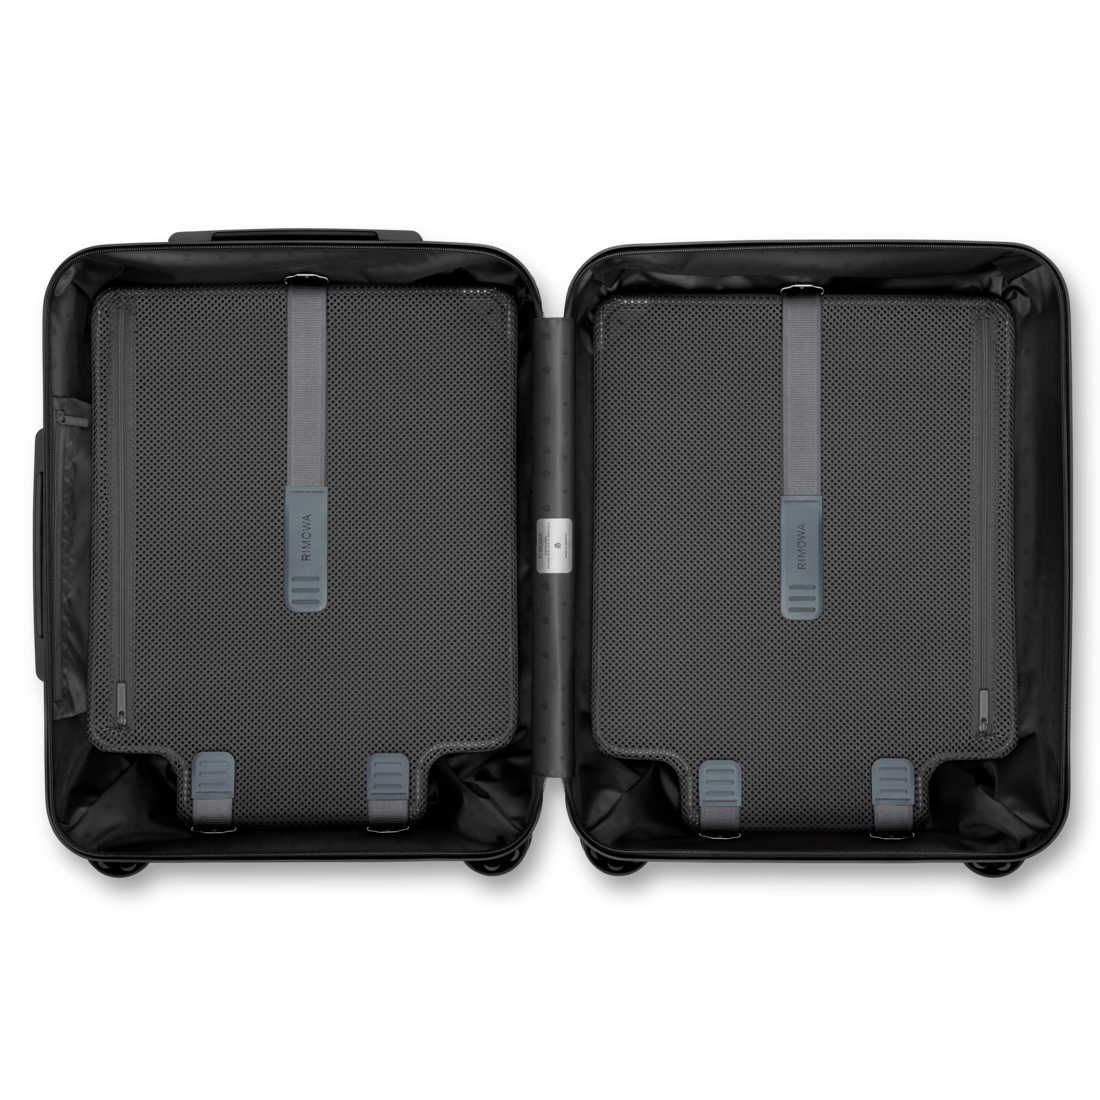 Essential Sleeve Cabin Plus Suitcase | Black | RIMOWA